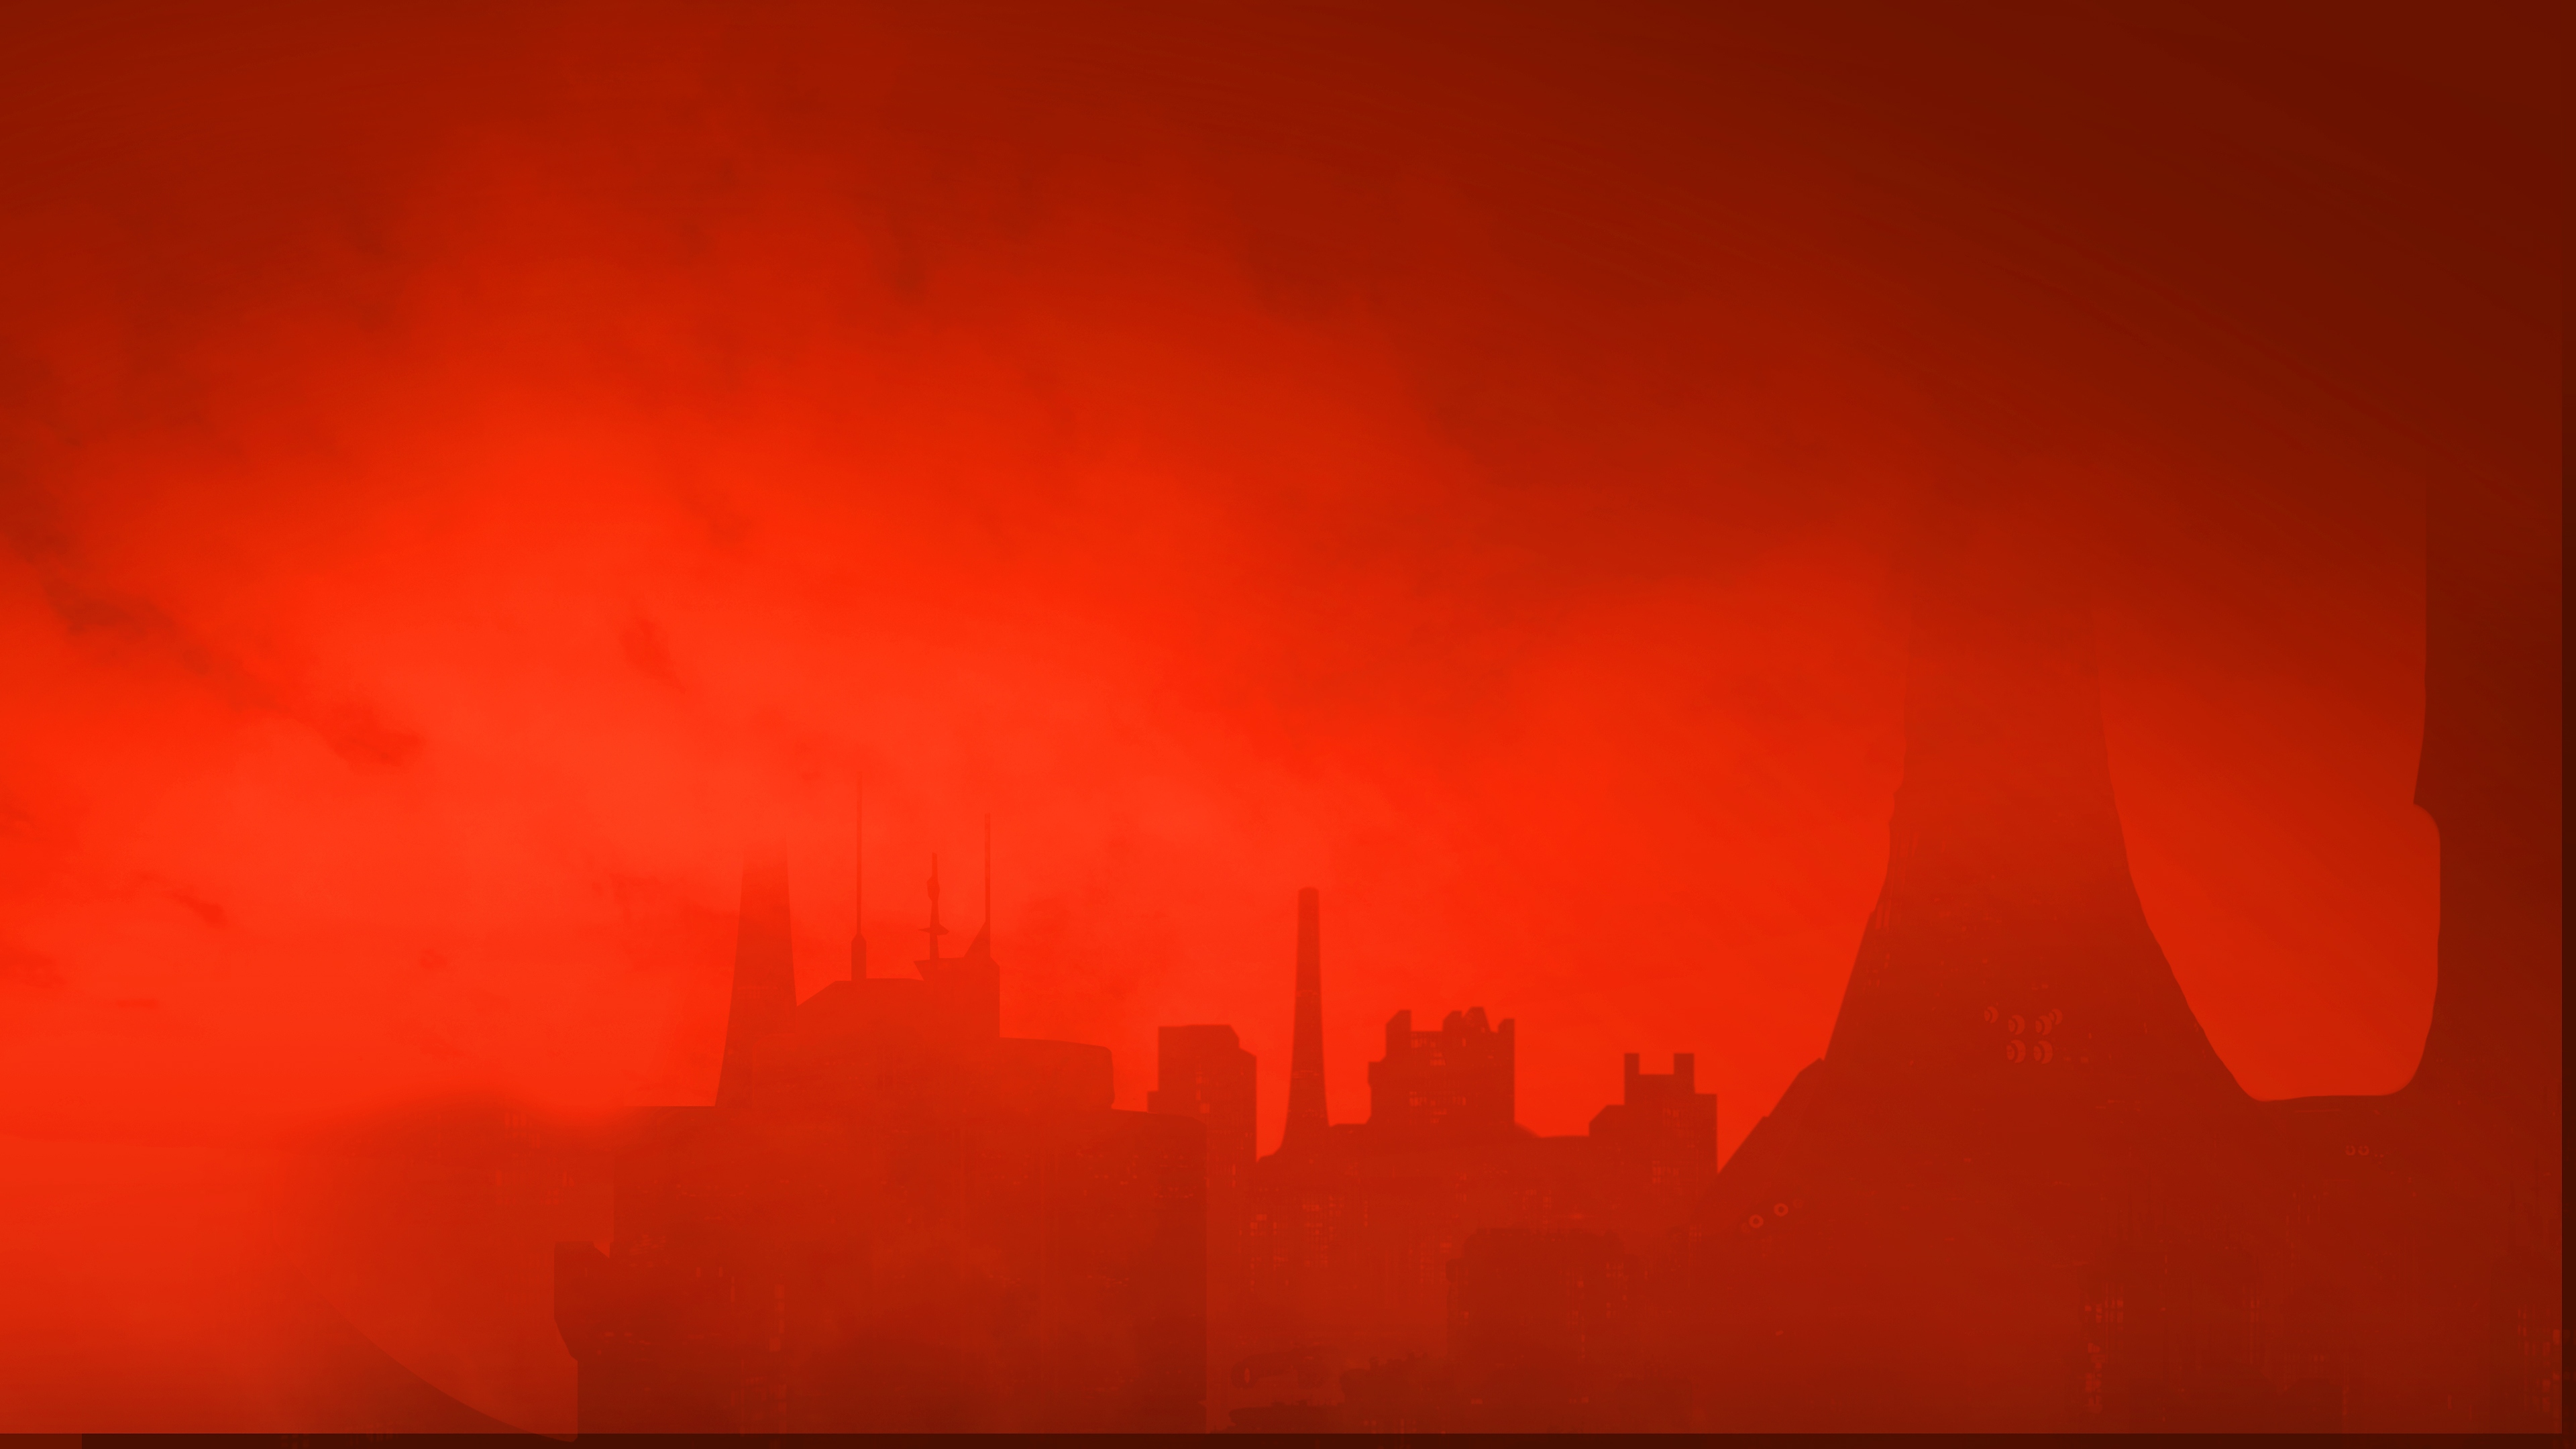 The Ascent háttérkép – a város sziluettje vörös ég alatt